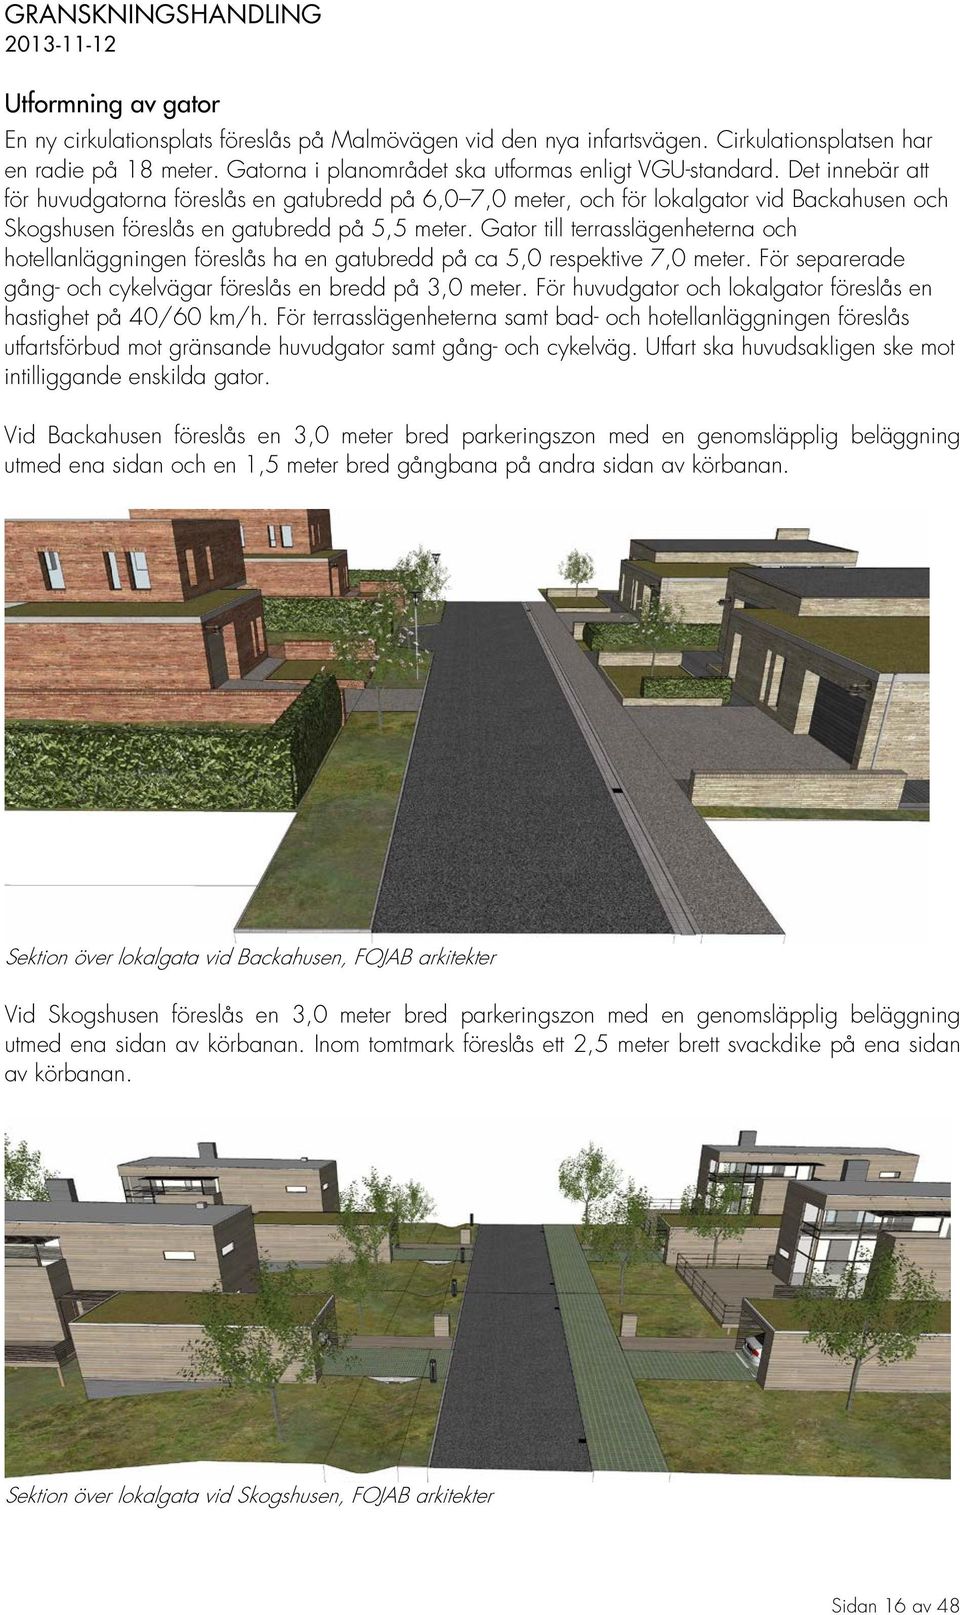 Gator till terrasslägenheterna och hotellanläggningen föreslås ha en gatubredd på ca 5,0 respektive 7,0 meter. För separerade gång- och cykelvägar föreslås en bredd på 3,0 meter.